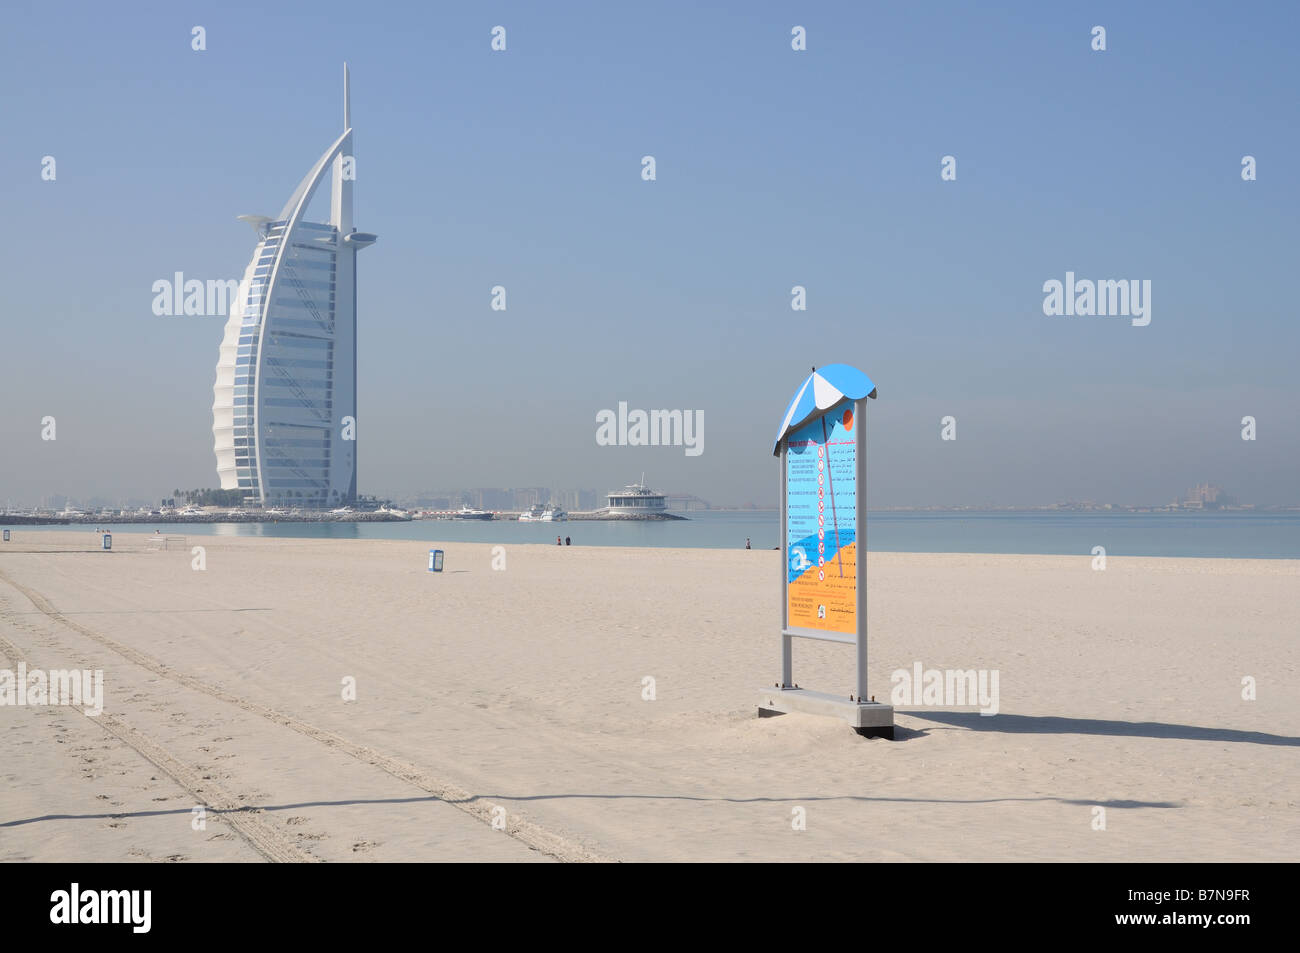 Jumeirah Beach and Hotel Burj Al Arab in Dubai Stock Photo